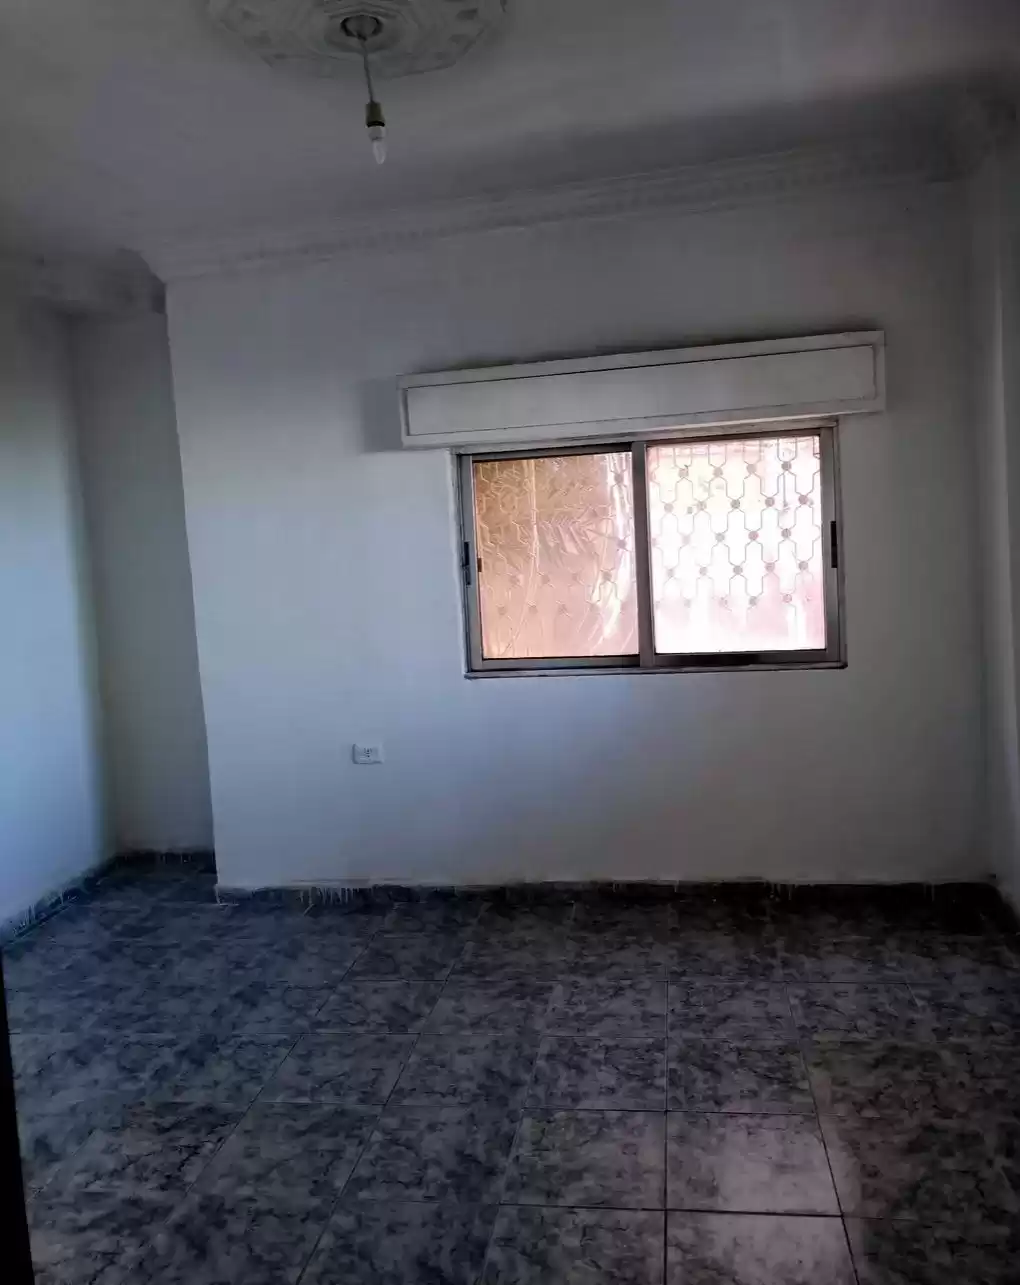 سكني عقار جاهز 3 غرف  غير مفروش شقة  للإيجار في عمان #26246 - 1  صورة 